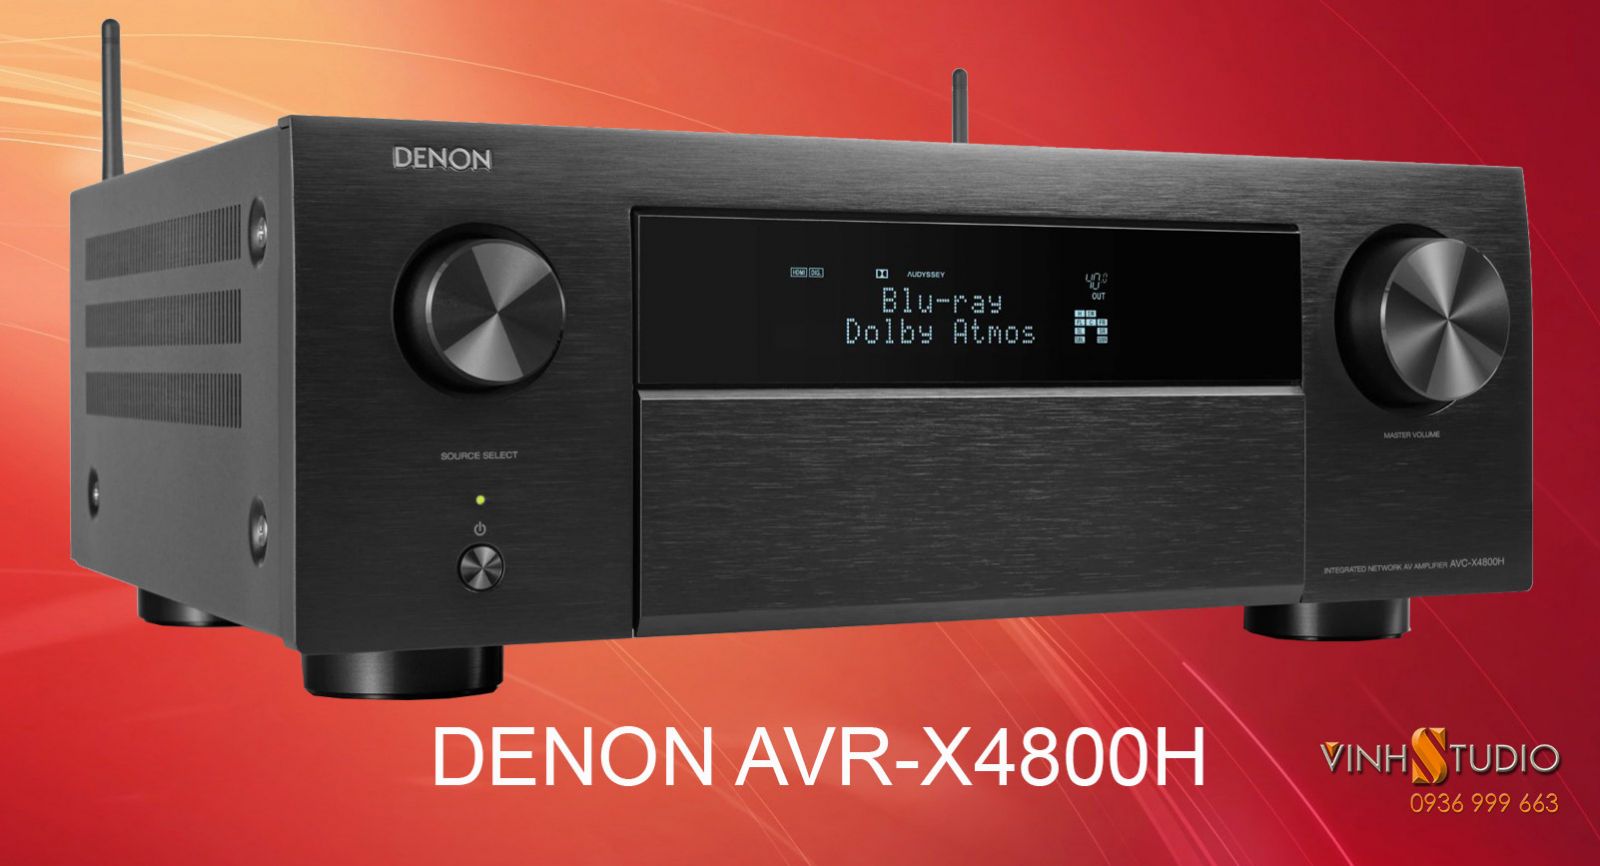 Ampli Denon AVR-X4800H giá rẻ nhất Hà Nội - Việt Nam sẵn hàng tại Vinhstudio